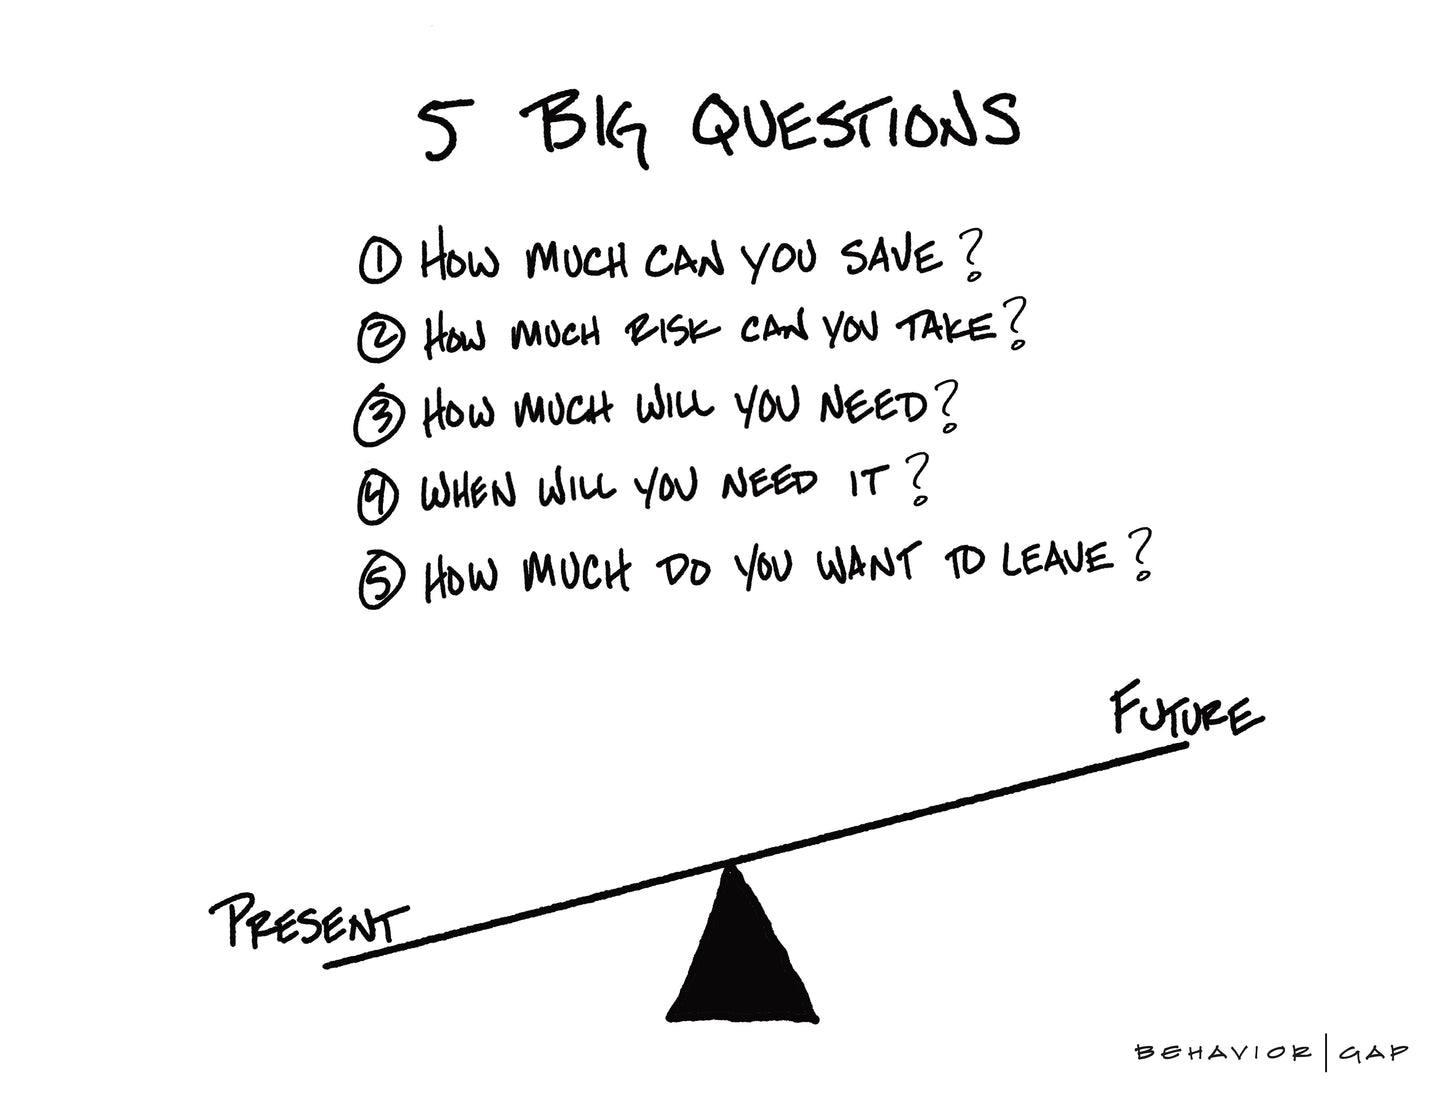 5 Big Questions